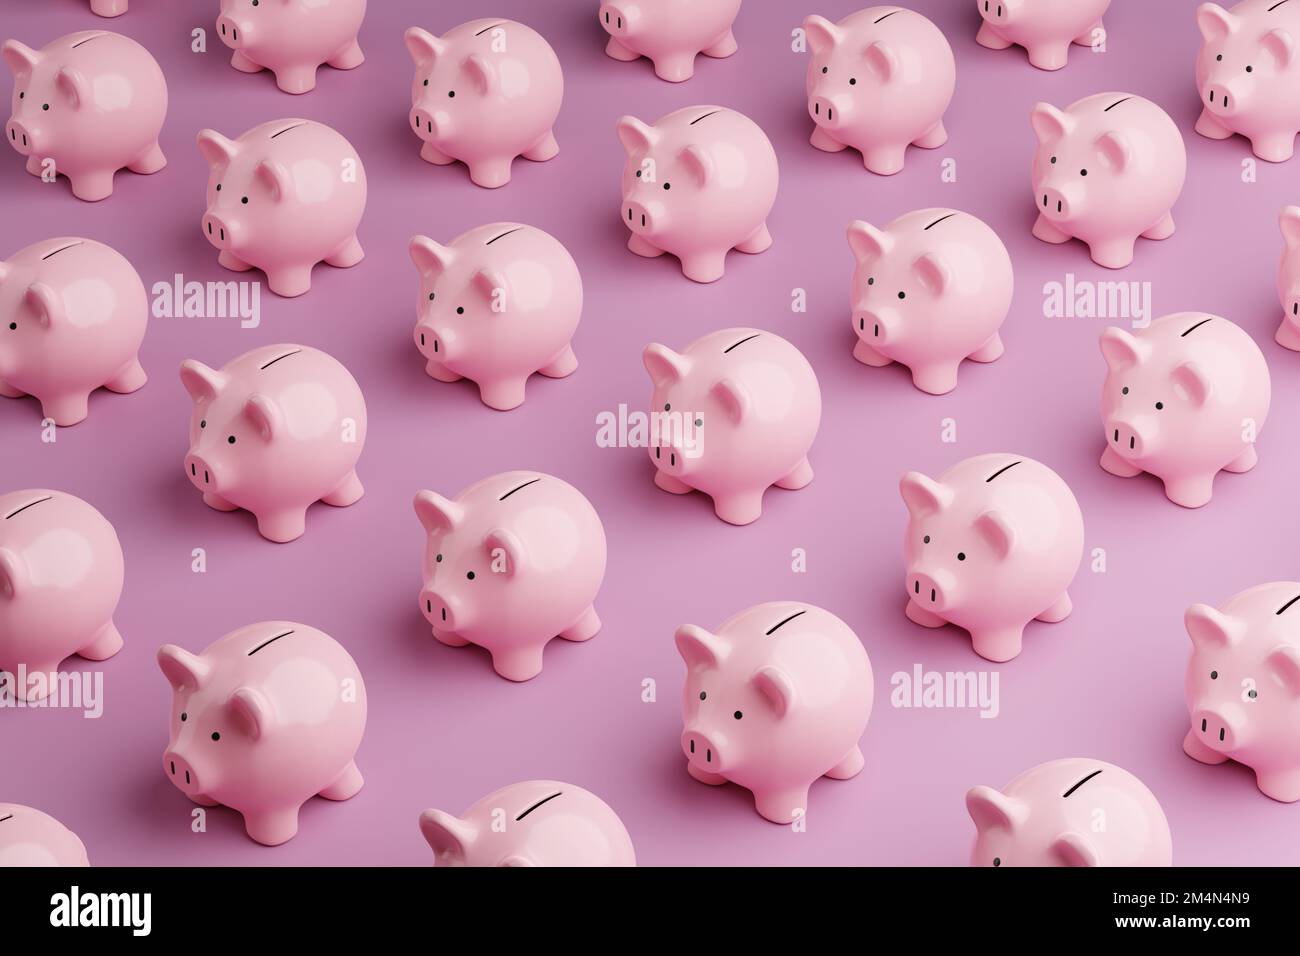 Eine Reihe rosafarbener Sparschweine auf pinkfarbenem Hintergrund. Veranschaulichung des Konzepts der persönlichen Ersparnisse und finanziellen Investitionen Stockfoto